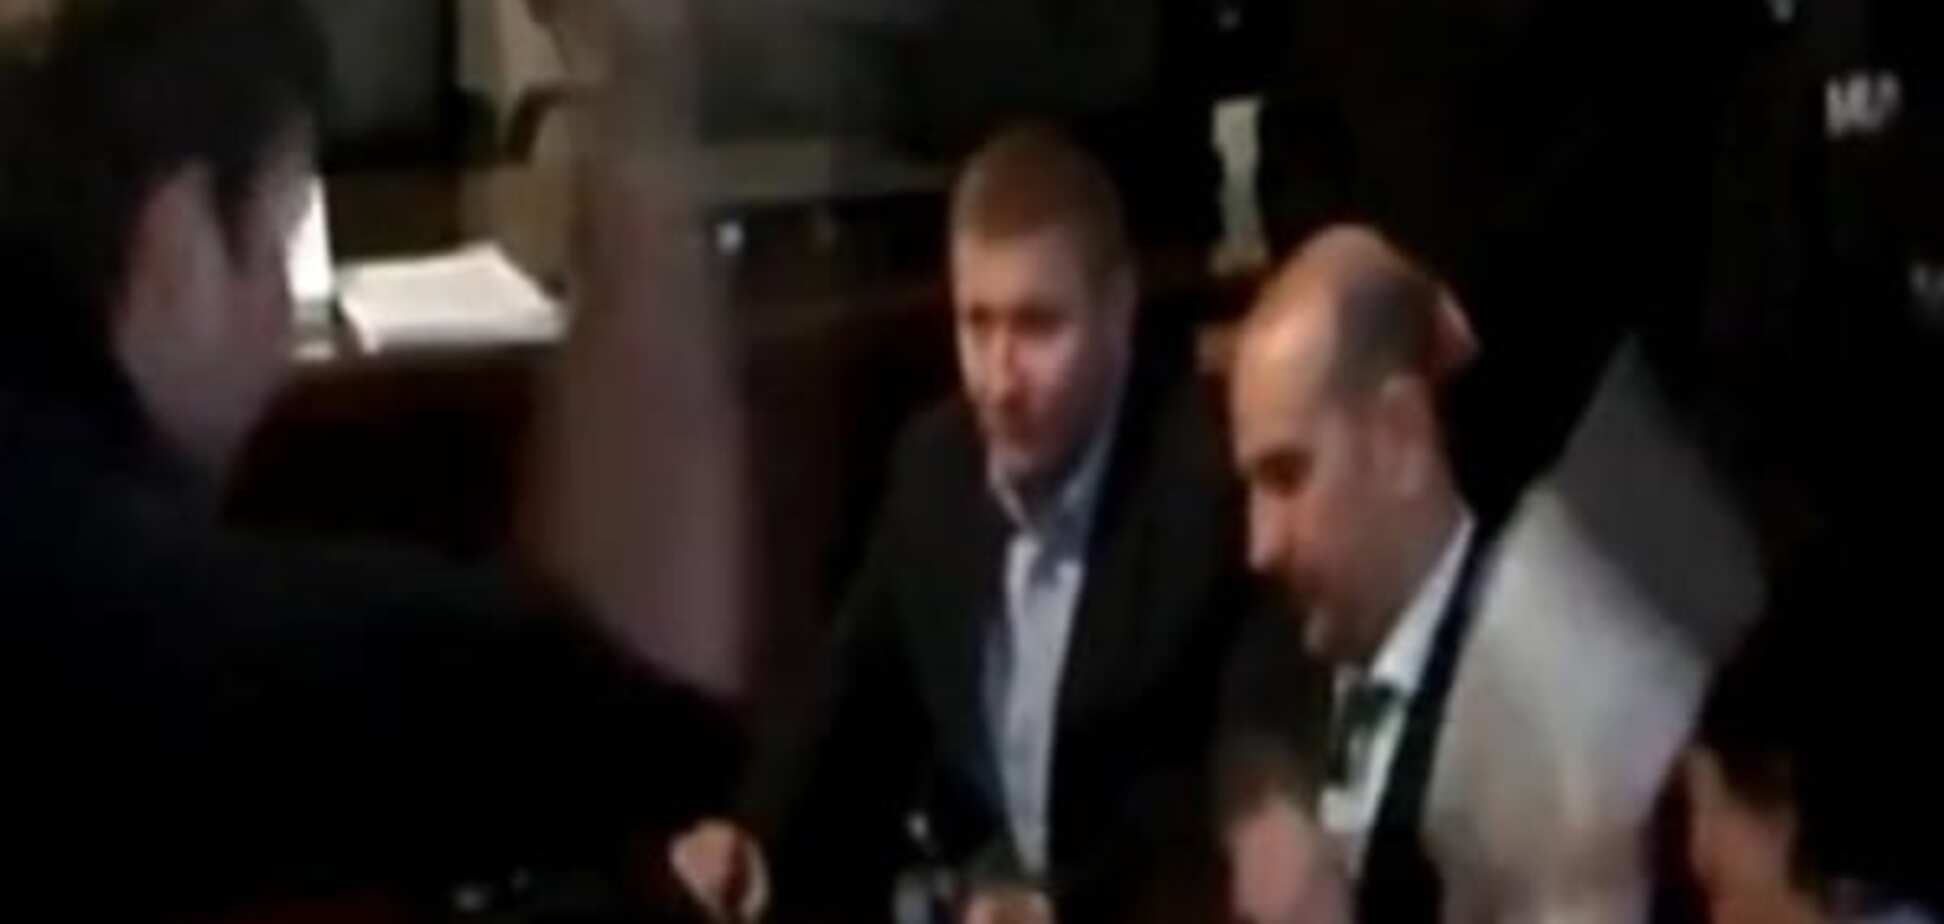 Парасюк попал под следствие прокуратуры из-за брошенного стакана: опубликовано видео 